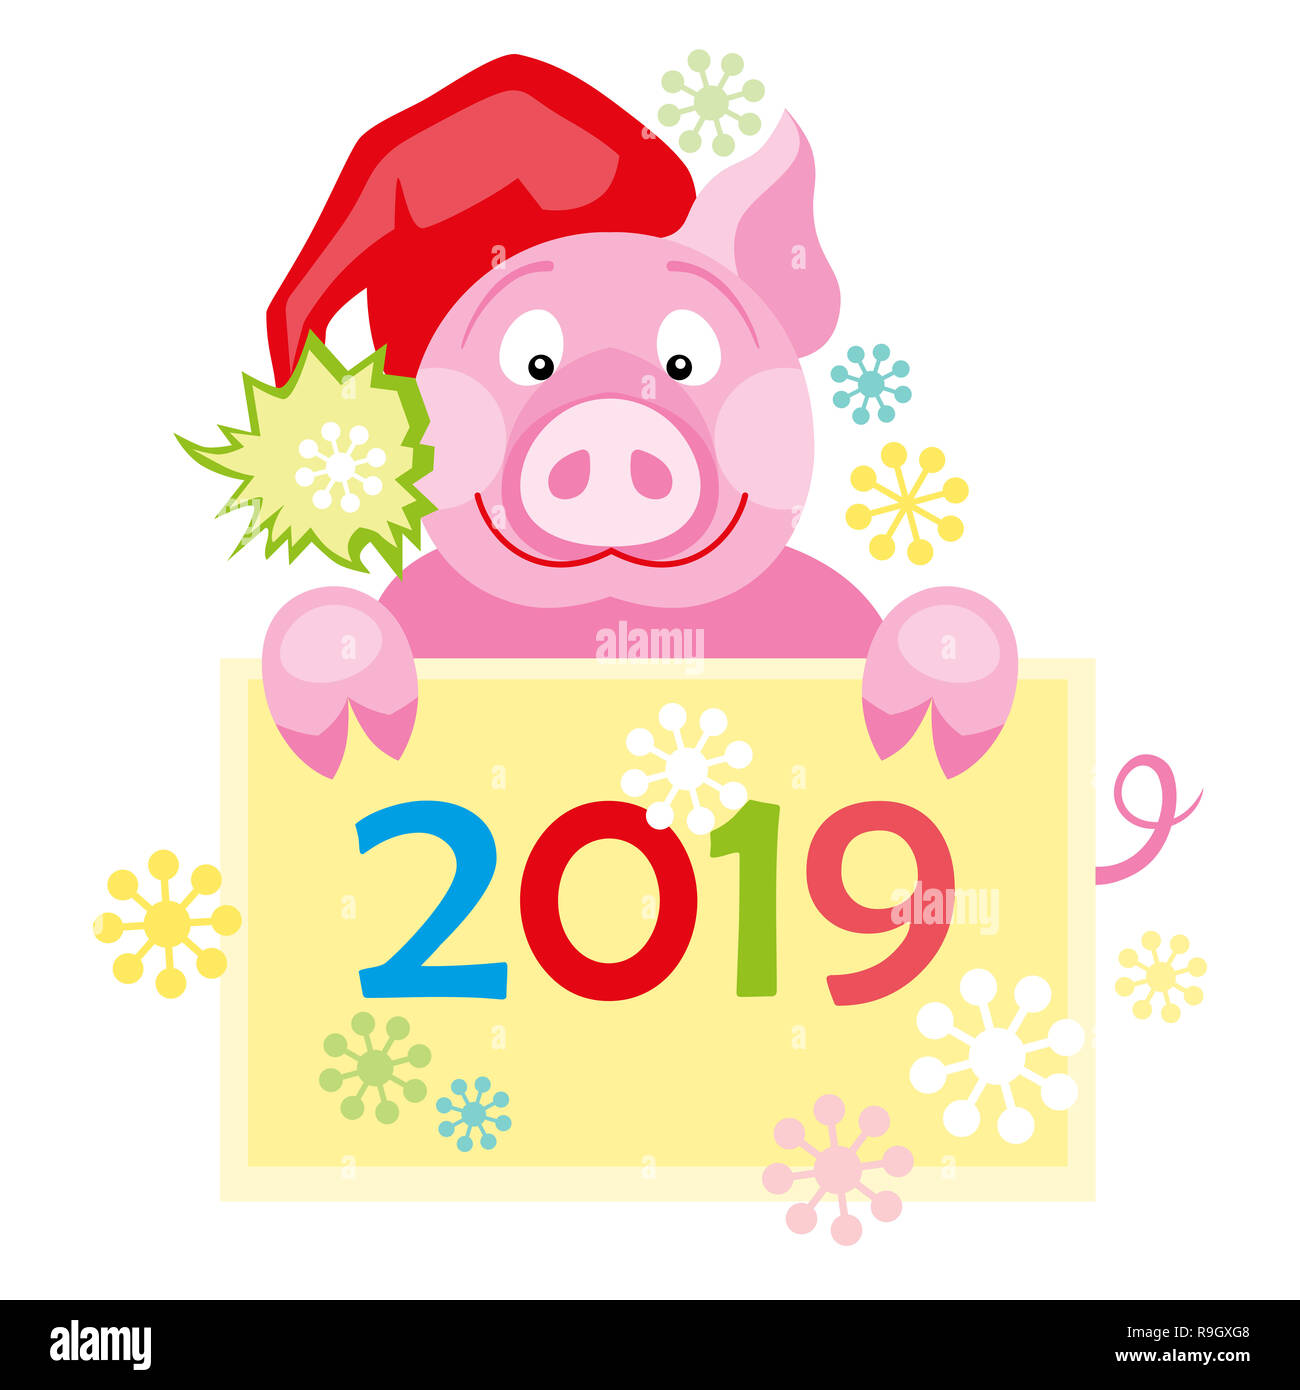 Neues Jahr 2019 Karte mit niedlichen Schwein. Symbol für das Jahr im chinesischen Kalender Stockfoto